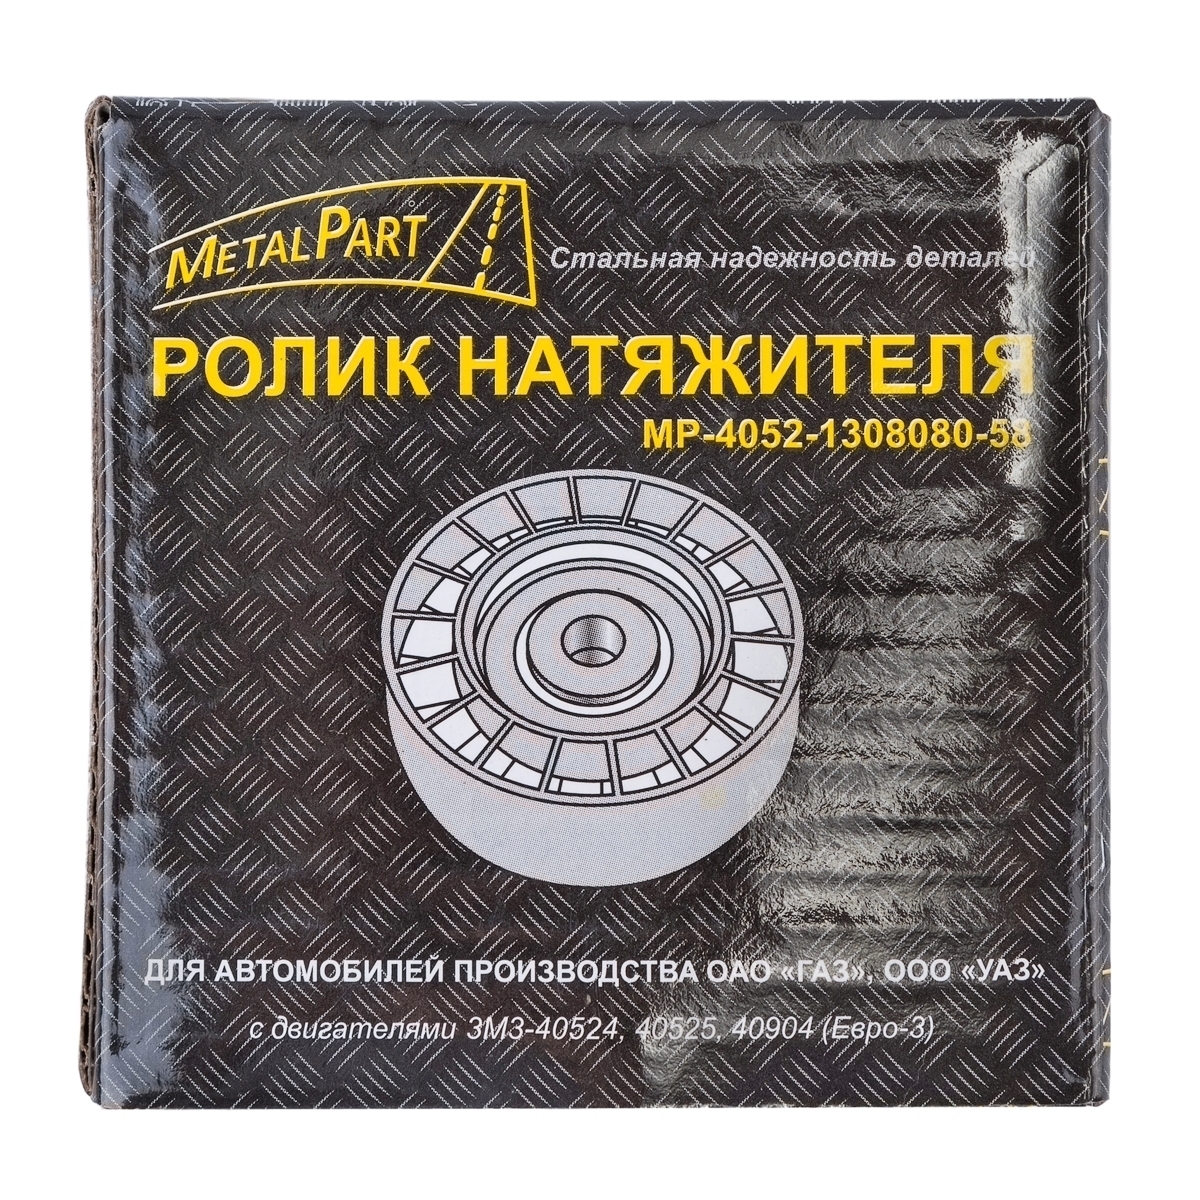 Ролик натяжной  "MetalPart" для автомобилей УАЗ с двигателем ЗМЗ-40904, -4091 (Евро-3)  